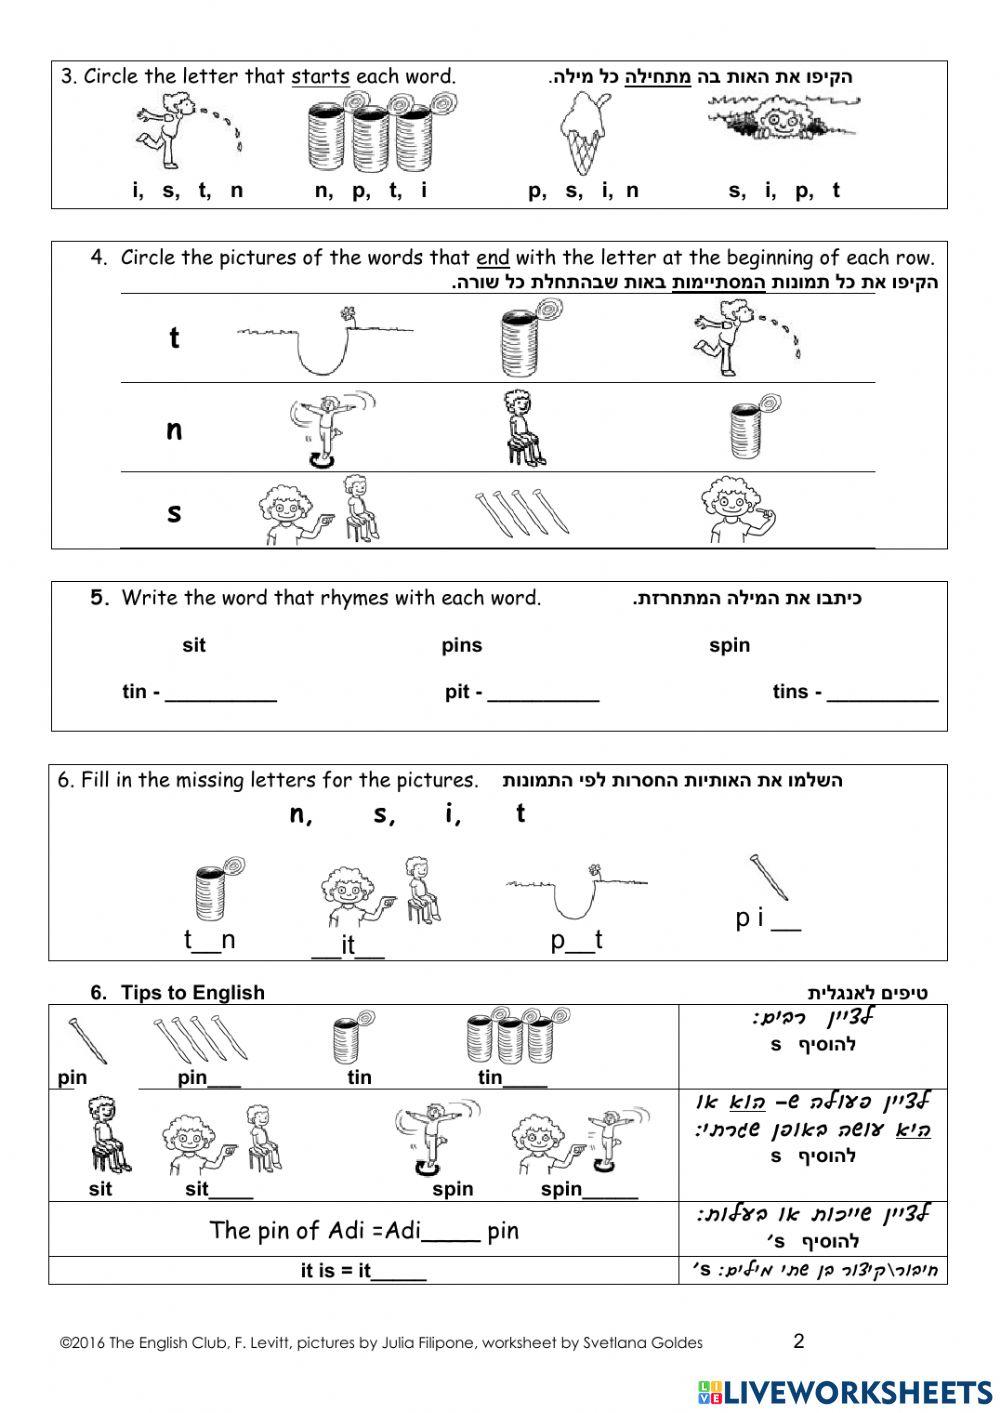 Reading program - Lesson 1 - i, t, p, n, s